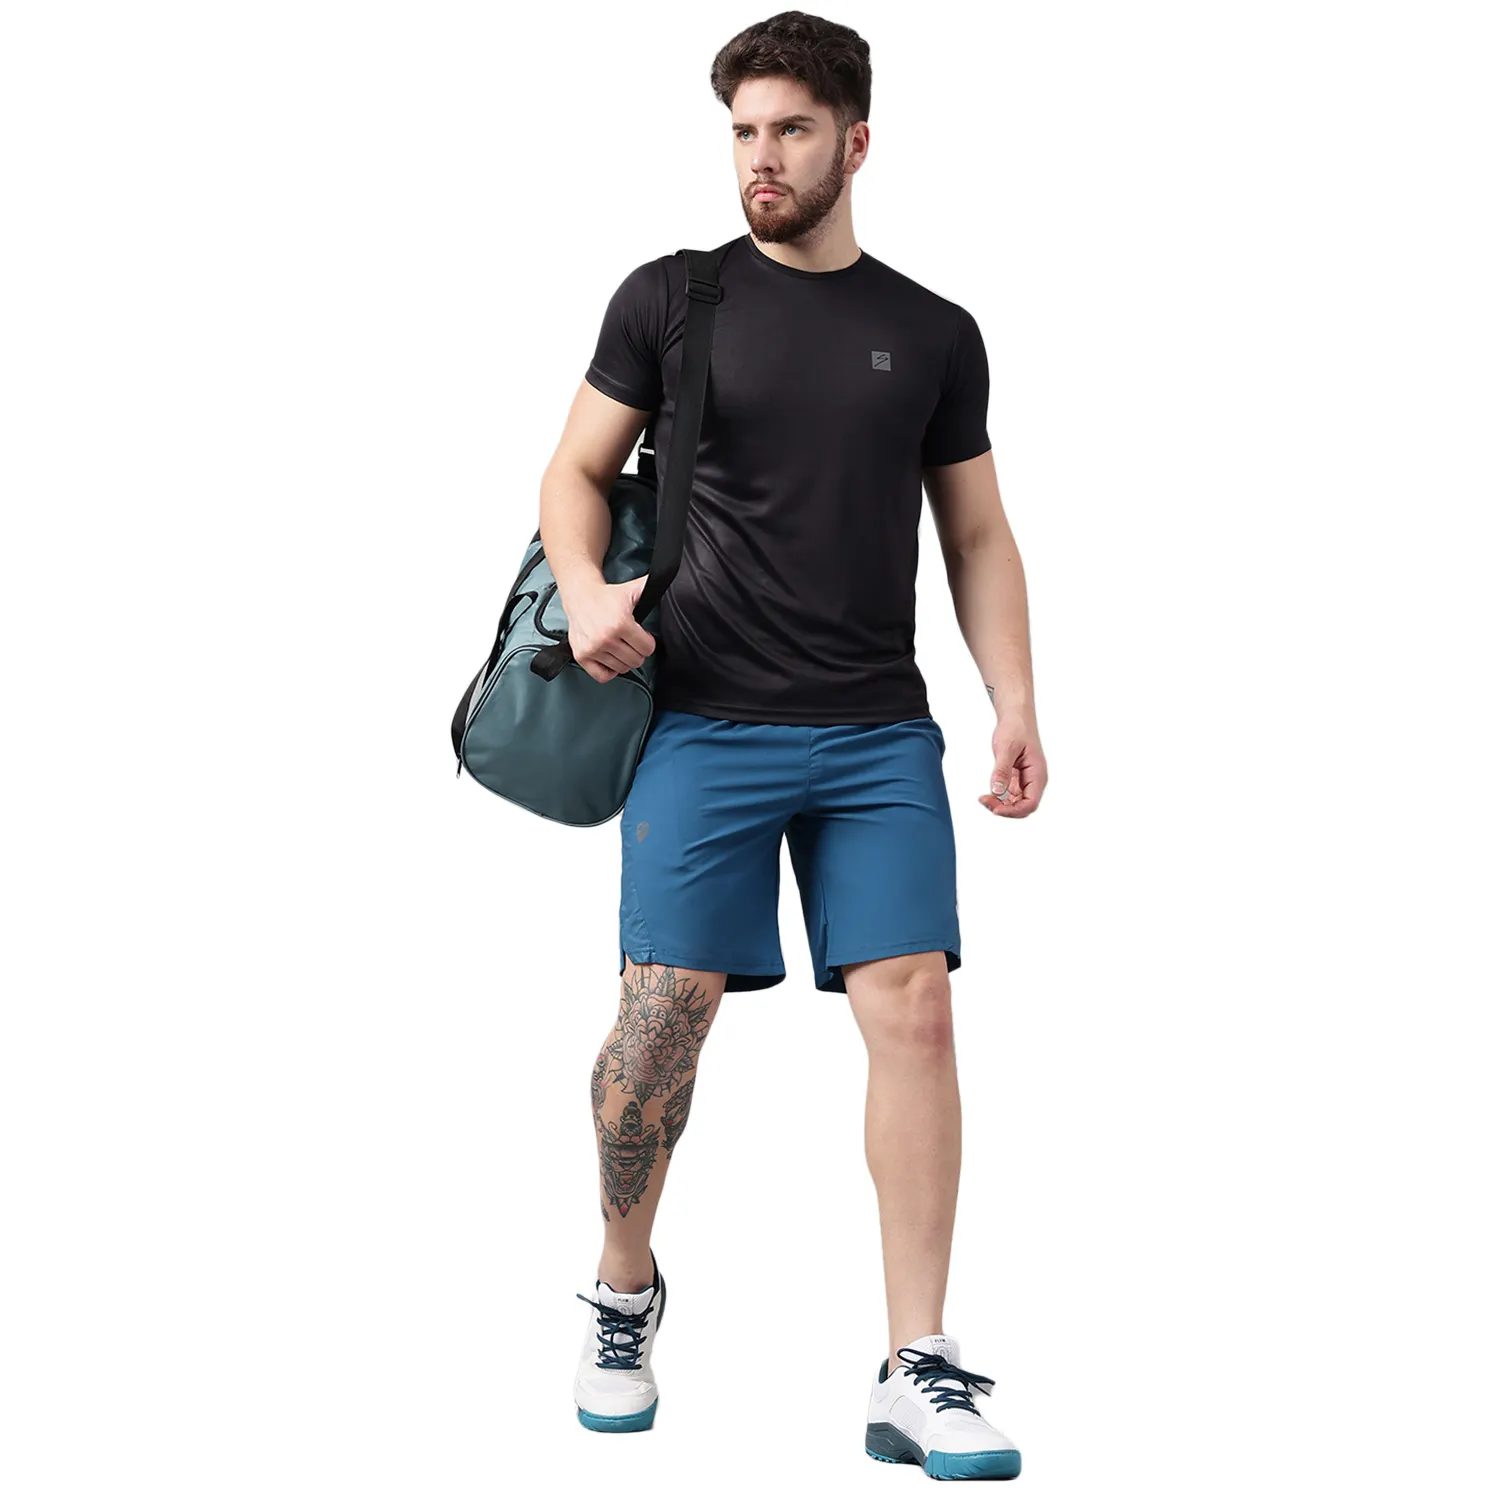 Vendita calda Design fresco personalizzato traspirante ad asciugatura rapida in poliestere 100% punto maglia uomo 'OEM' Sport maniche corte t-shirt